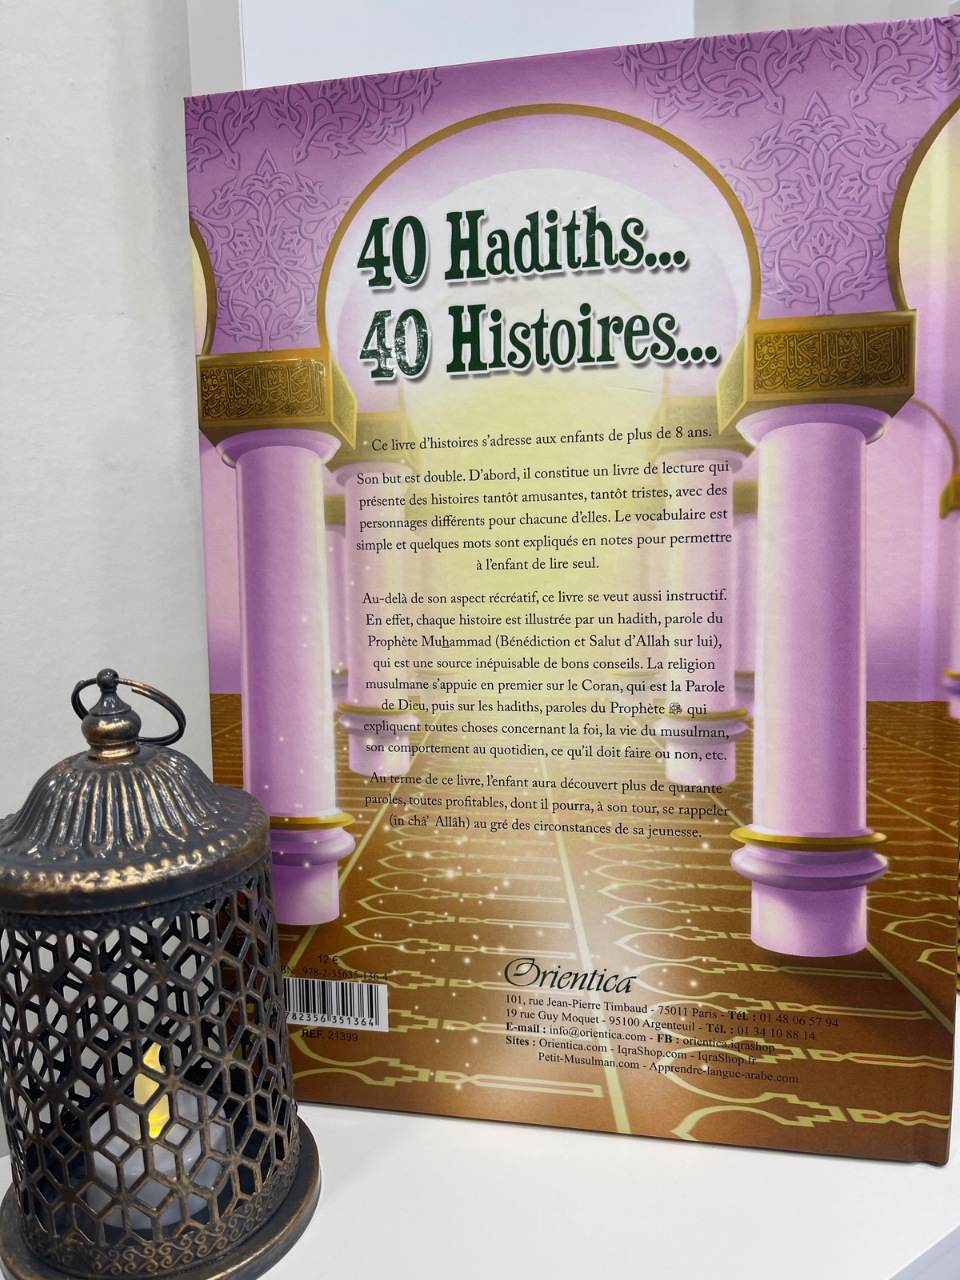 40 Hadiths... 40 Histoires